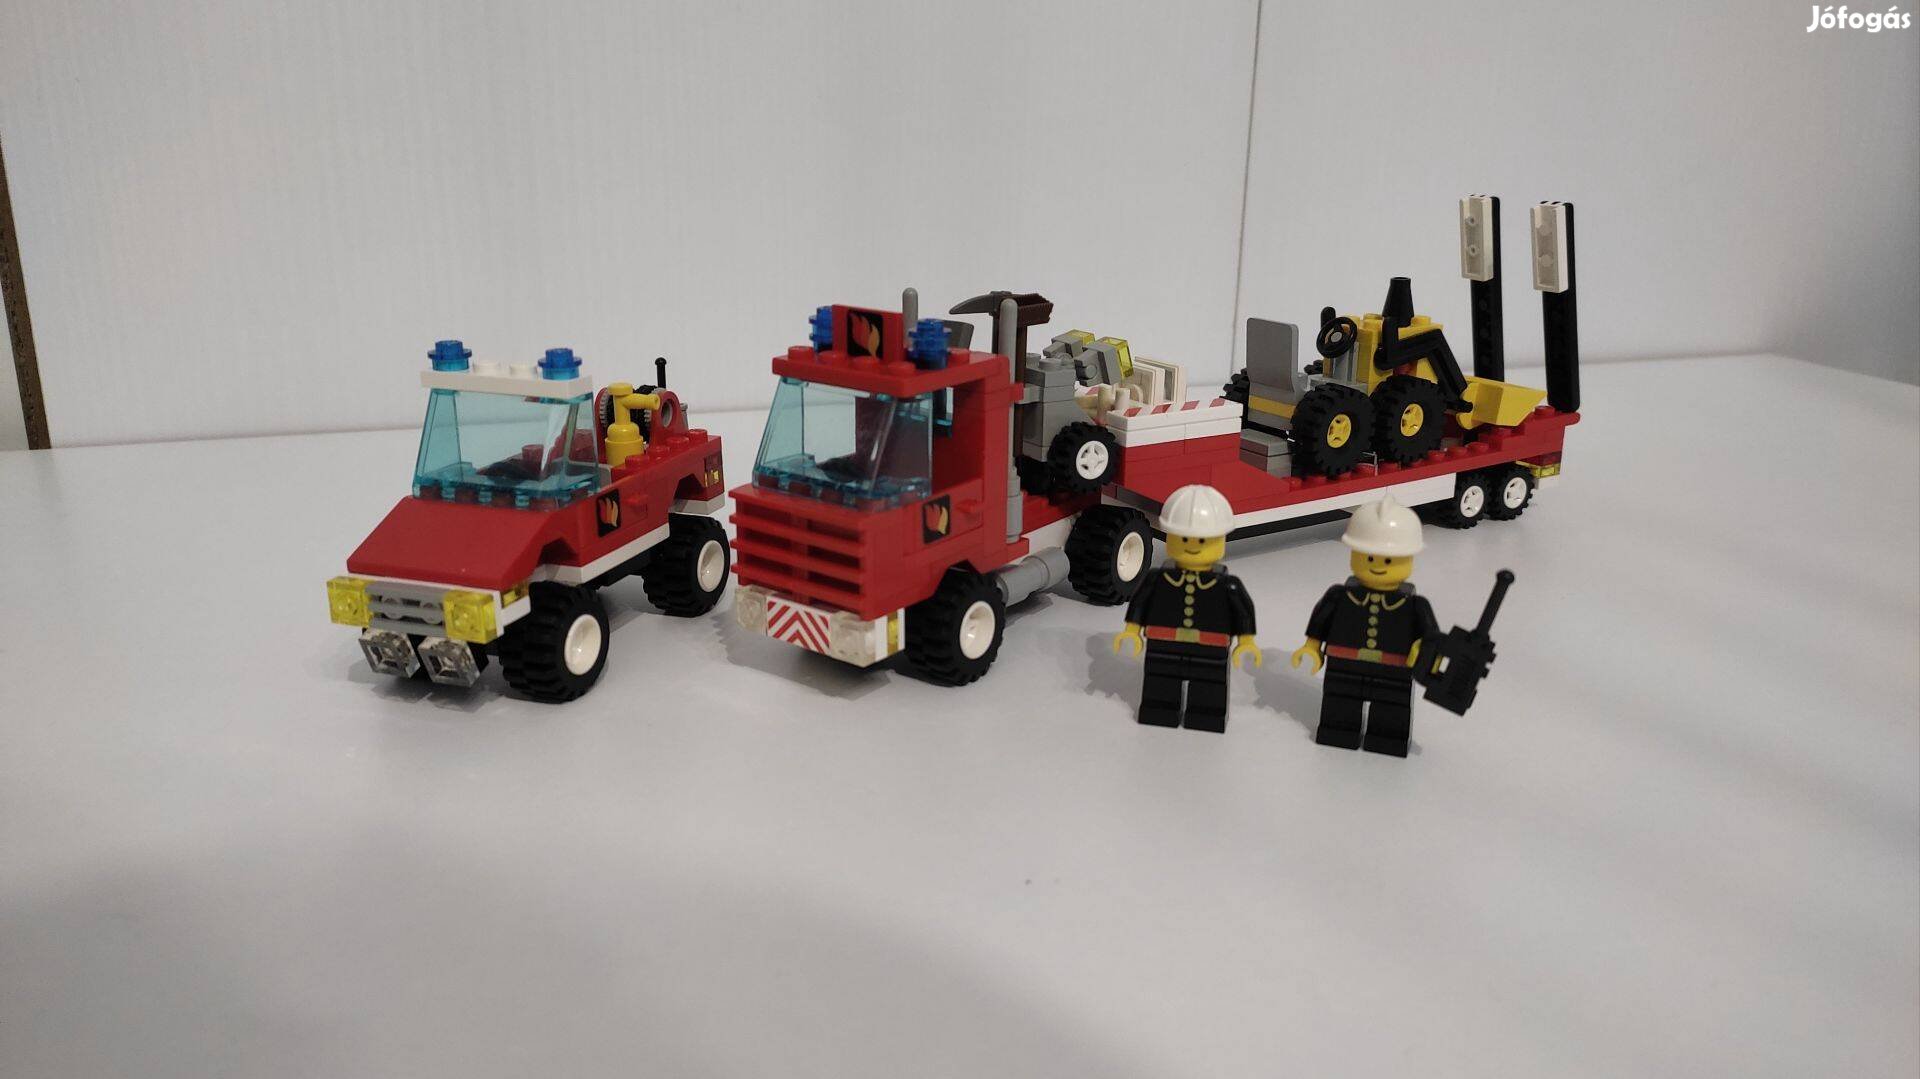 LEGO System 1656 - Evacuation Team